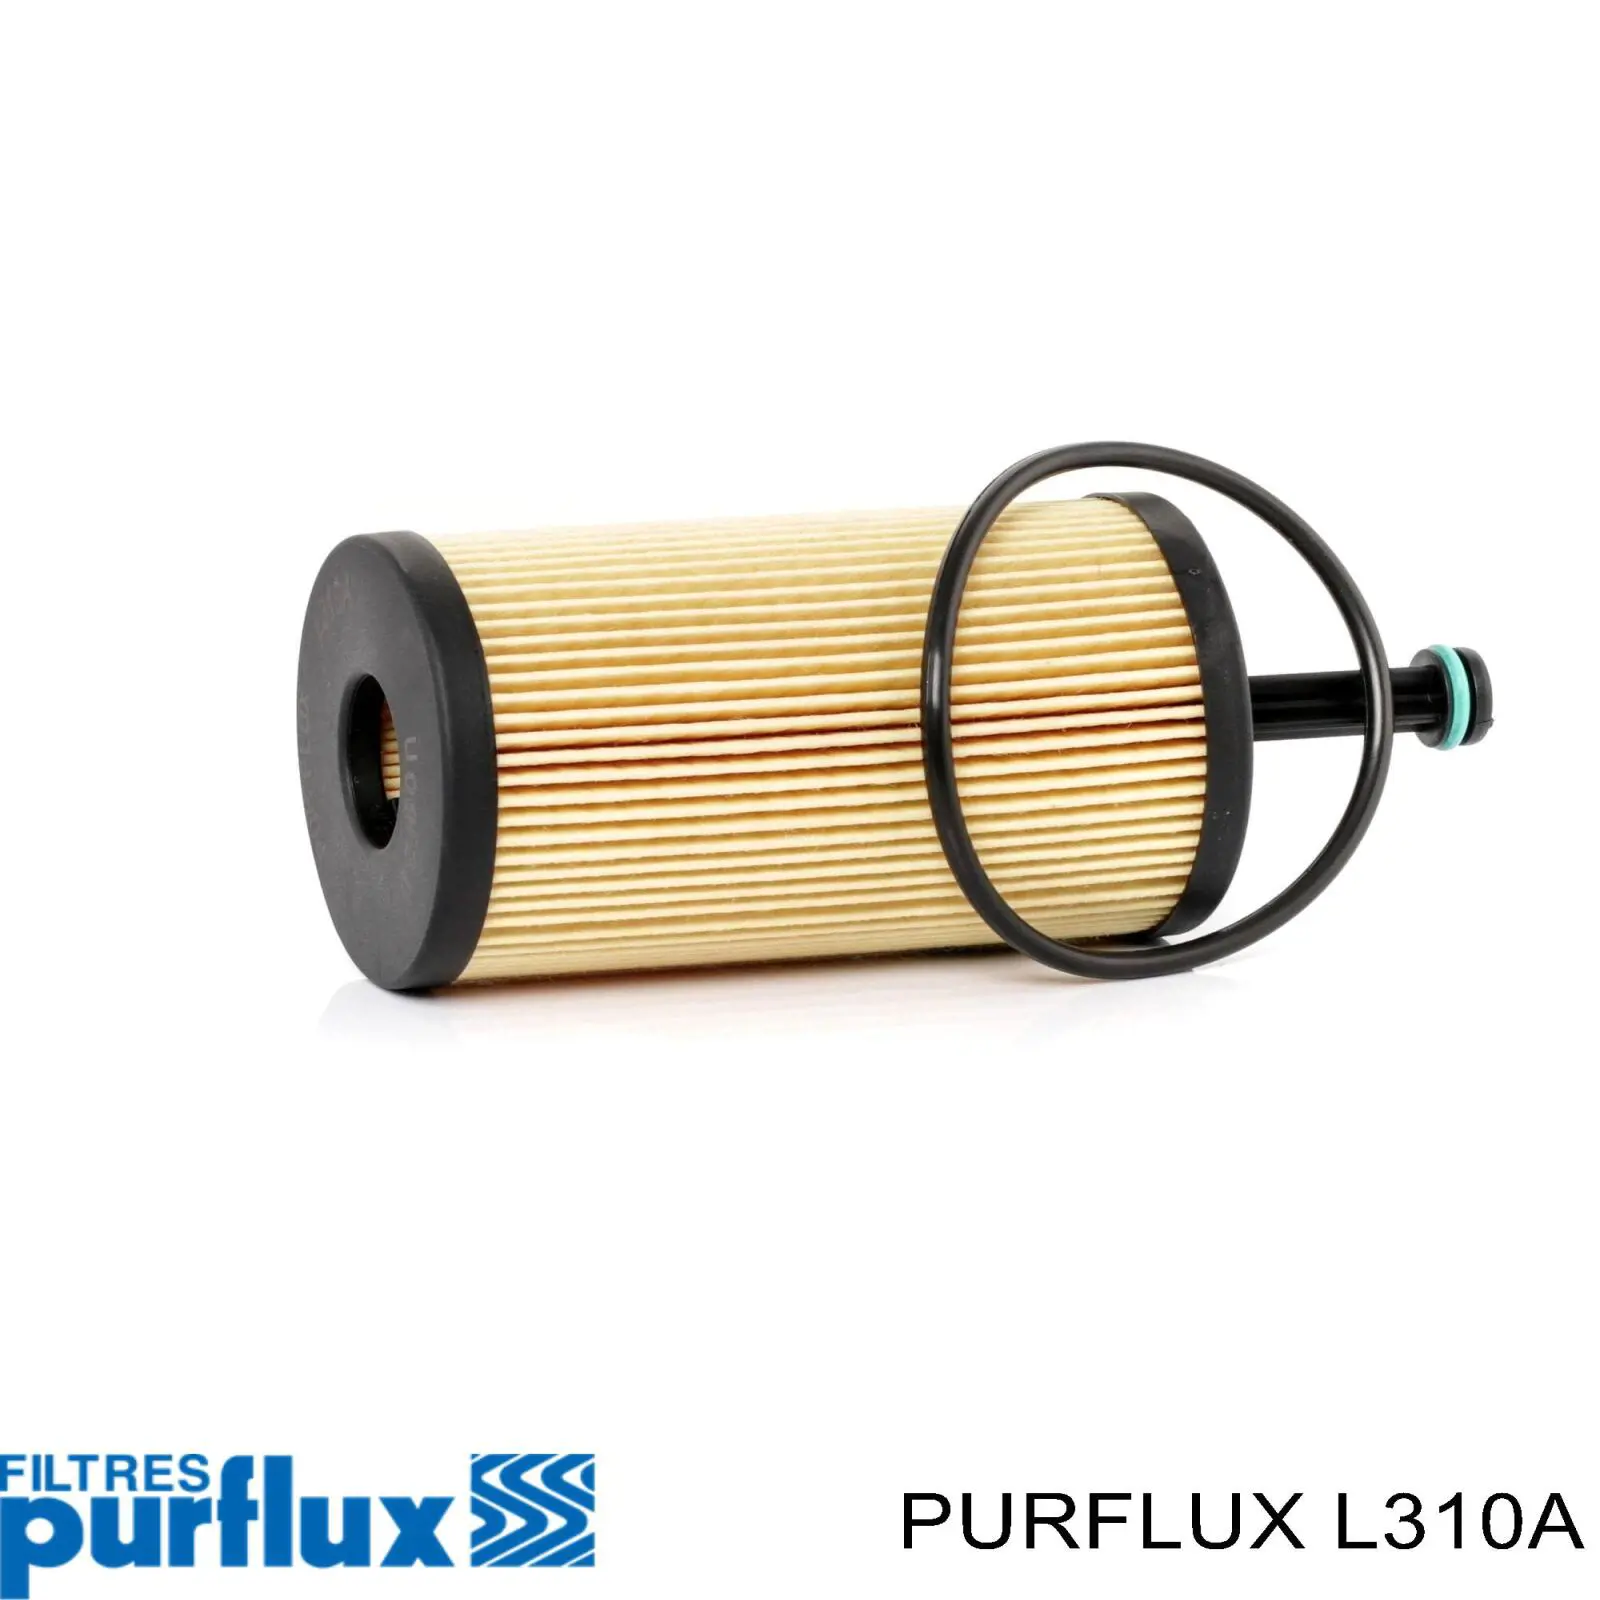 L310A Purflux filtro de aceite